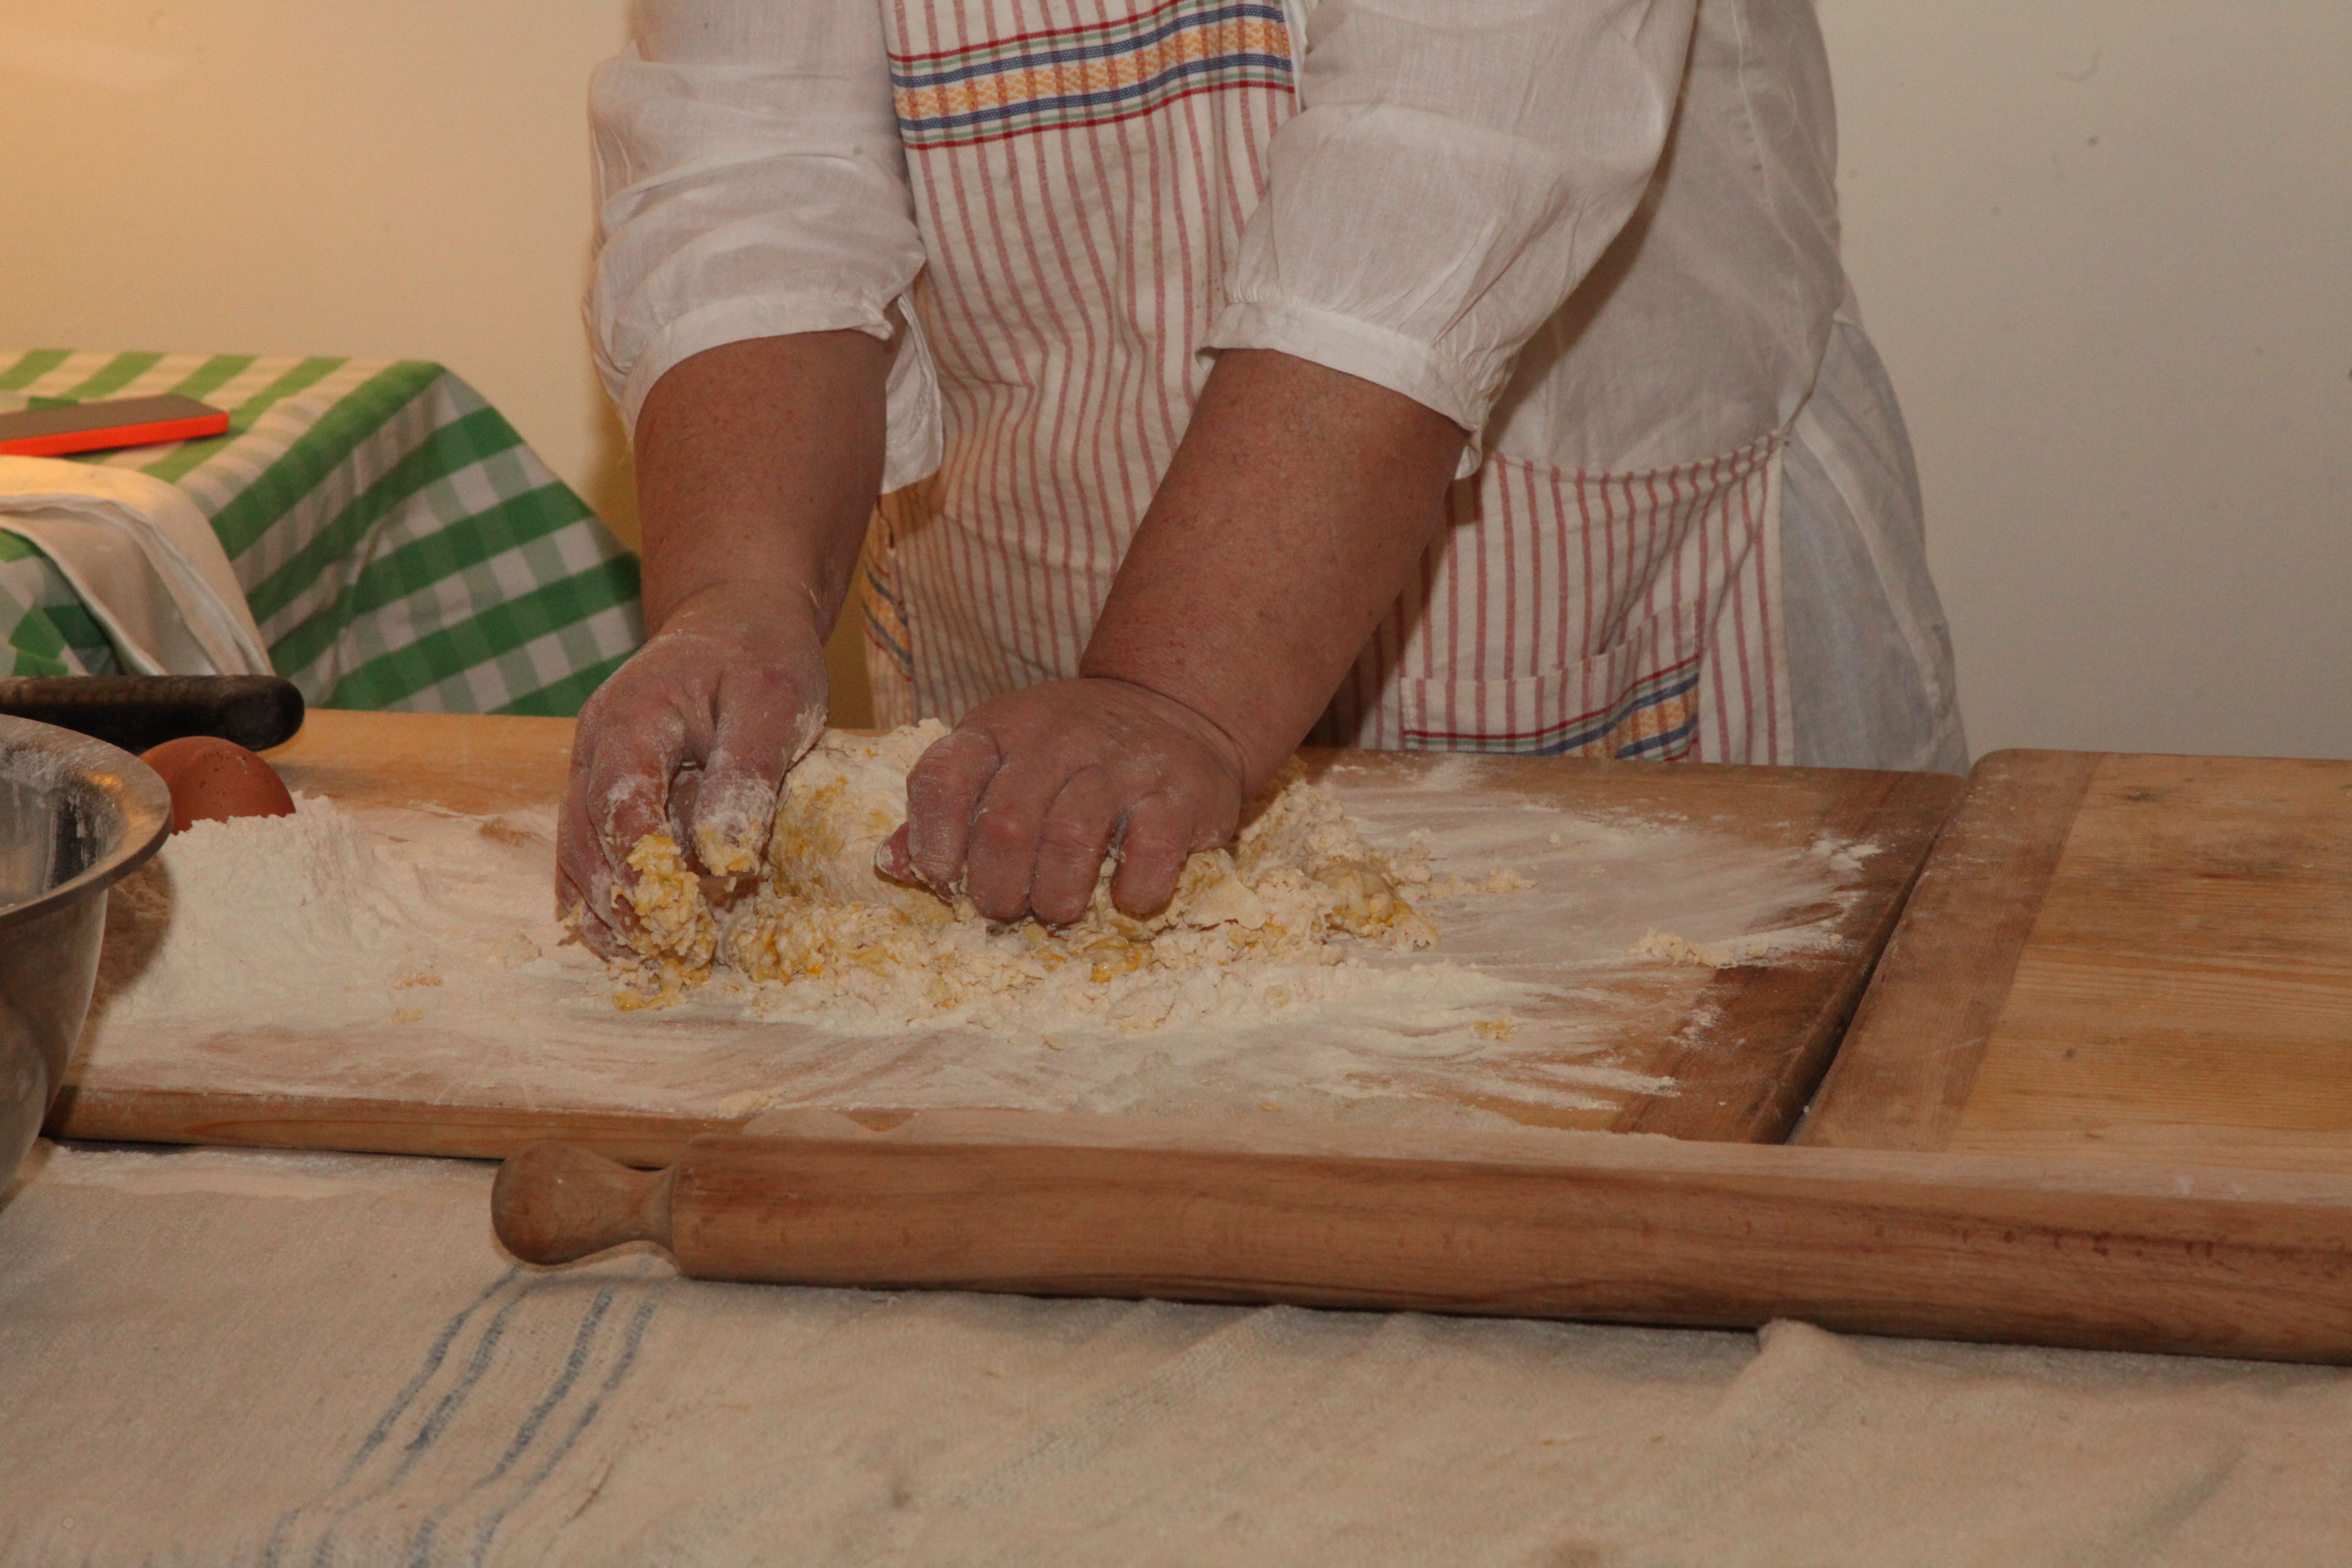 Hands in pasta